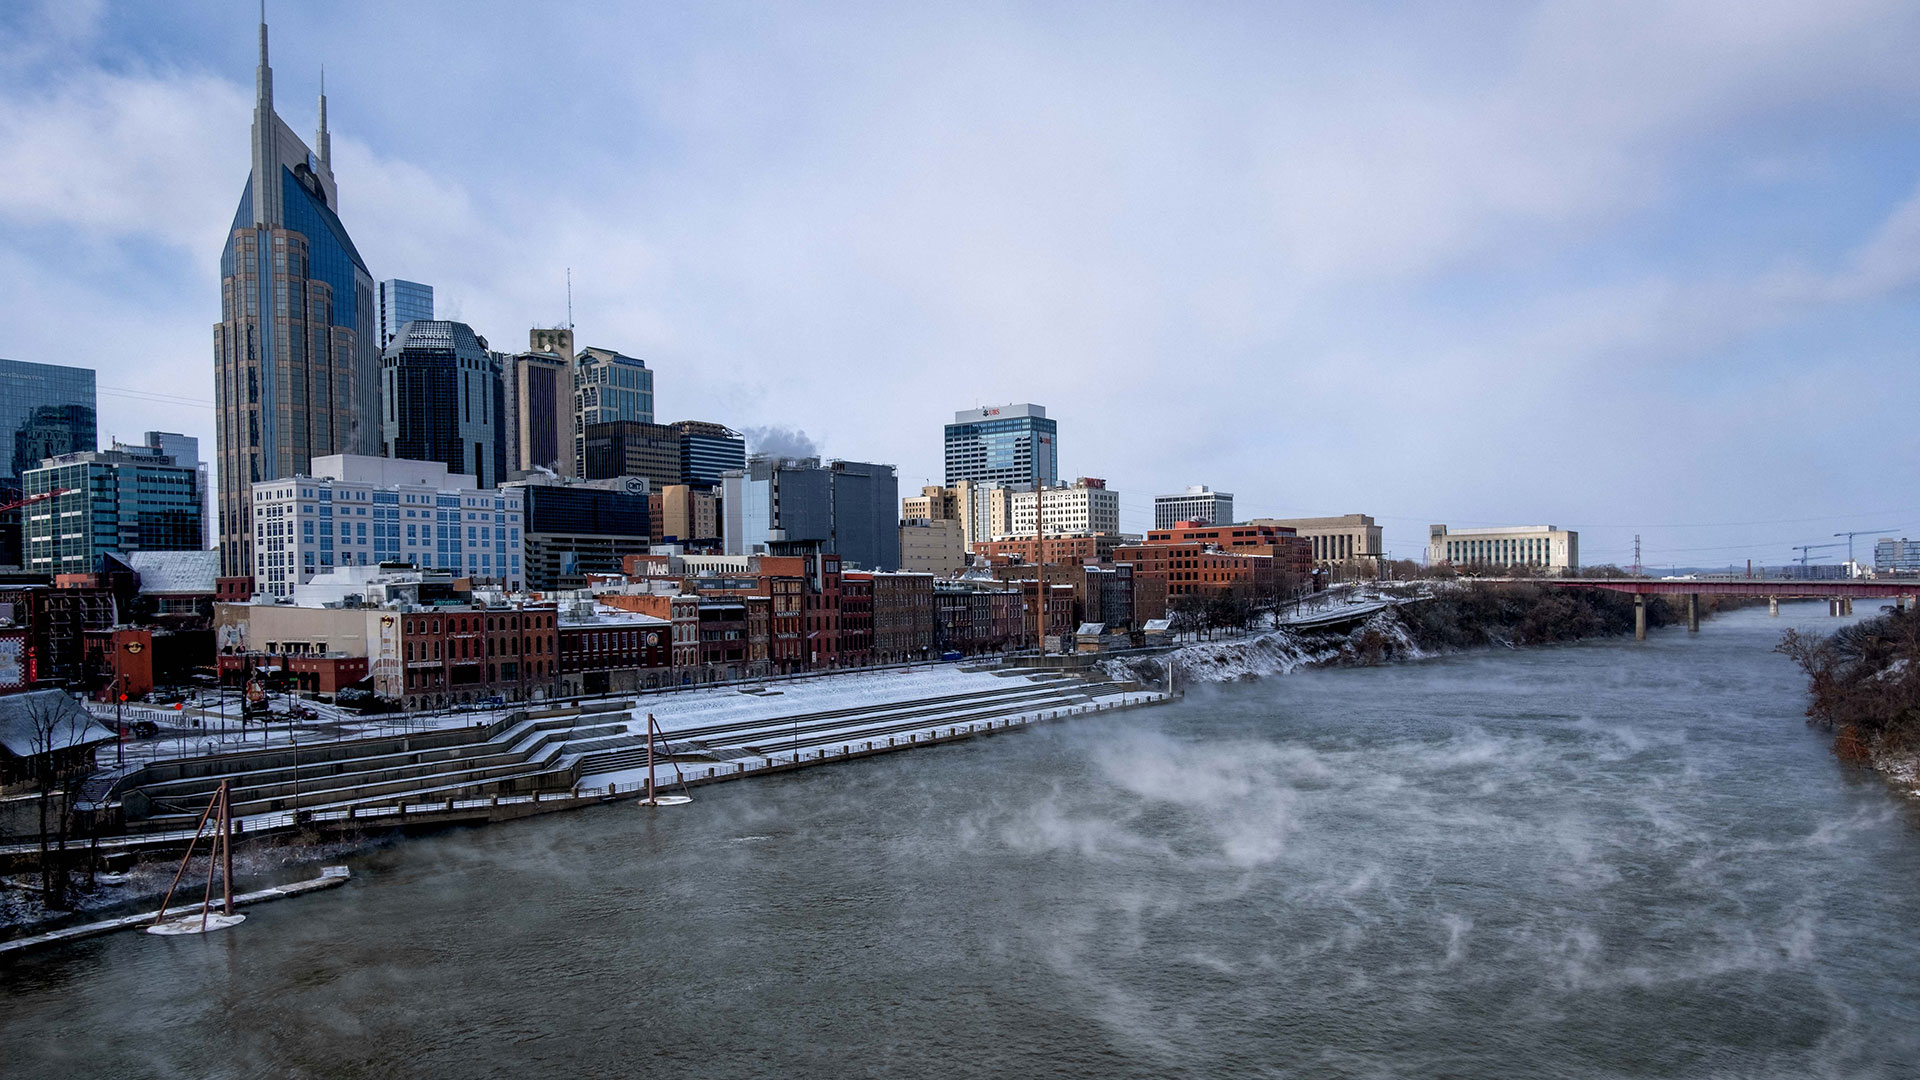 El vapor se eleva desde el río Cumberland en Nashville, Tennessee, el 23 de diciembre de 2022 después de que la tormenta invernal Elliot se desplazara por la región de Tennessee Medio dejando tras de sí lluvia helada, nieve y temperaturas bajo cero (AFP)